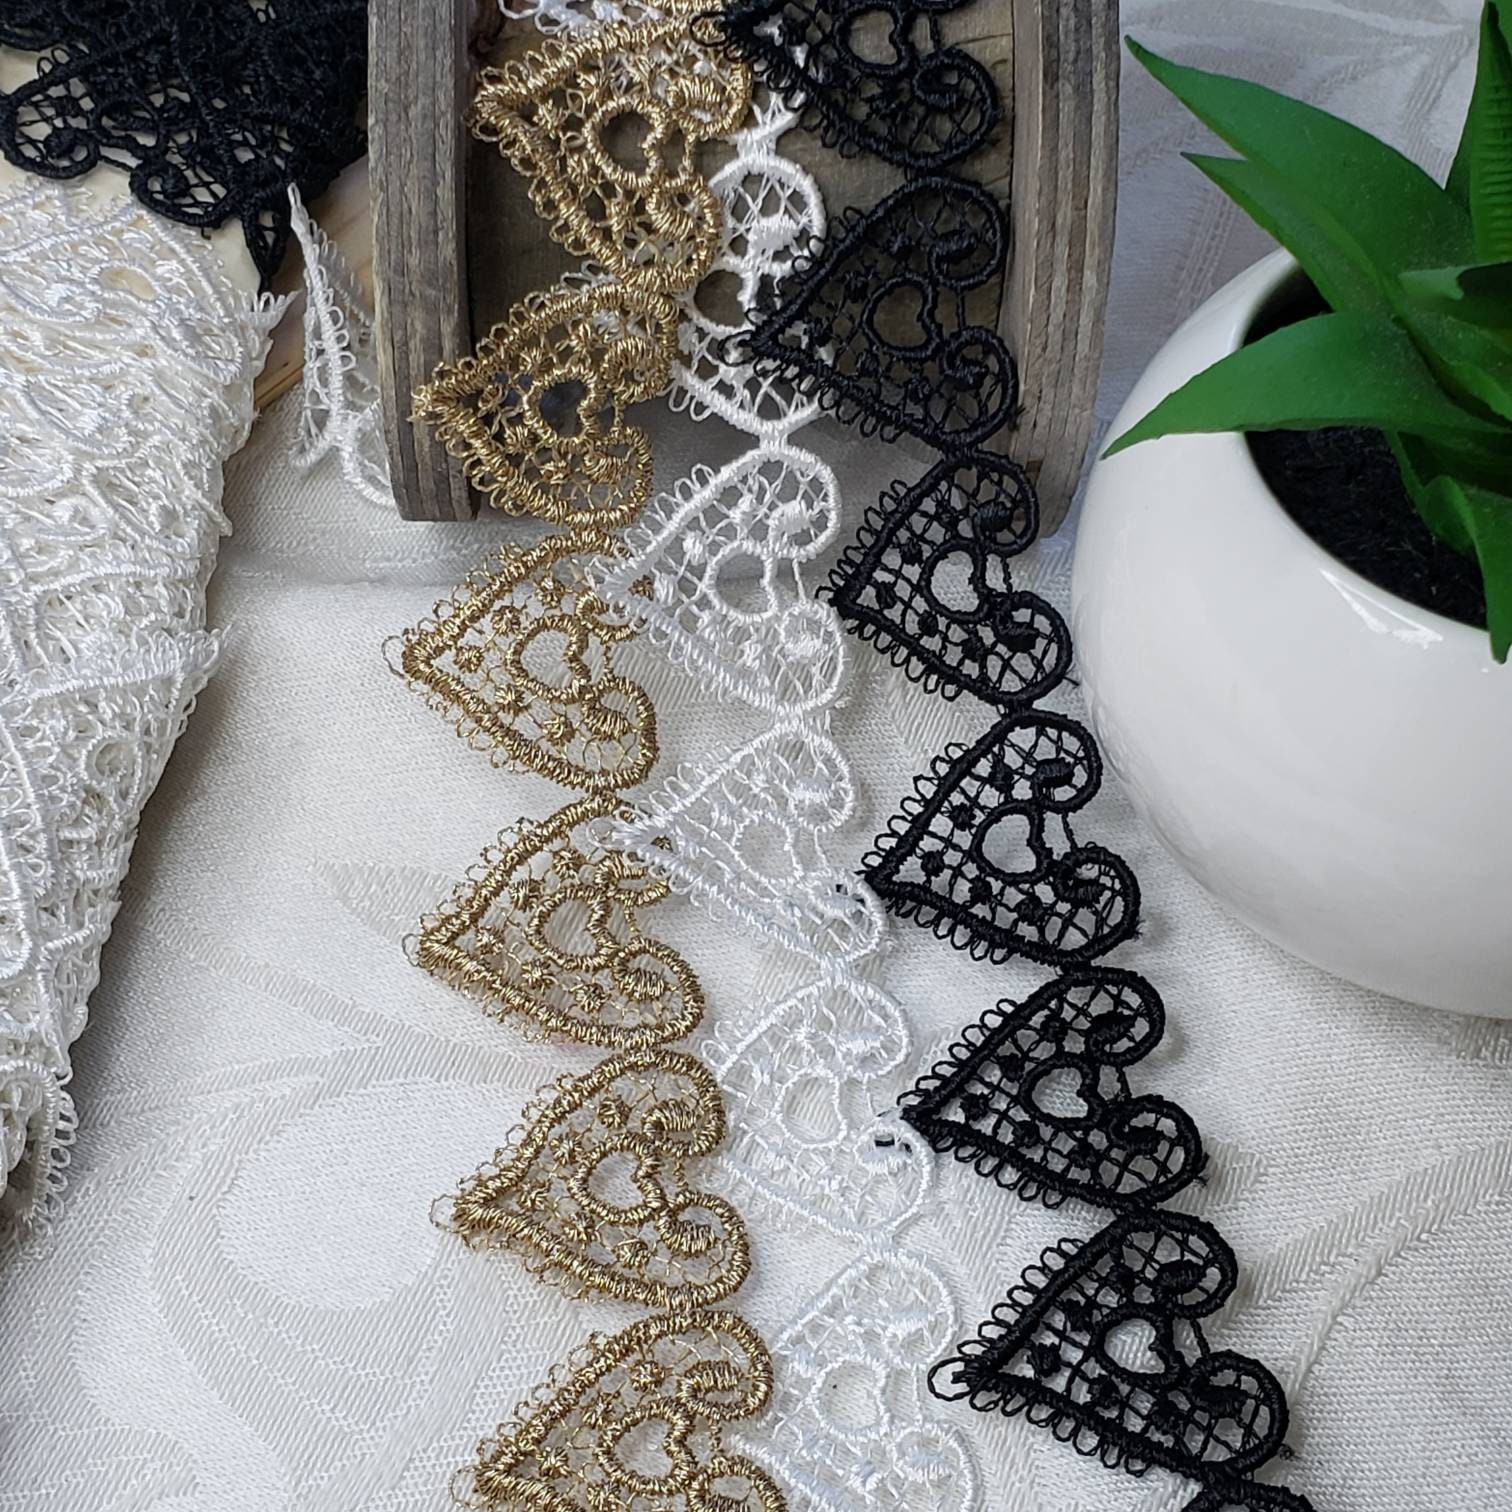 Black Applique, Venice Lace Applique, Embroidered Lace Applique